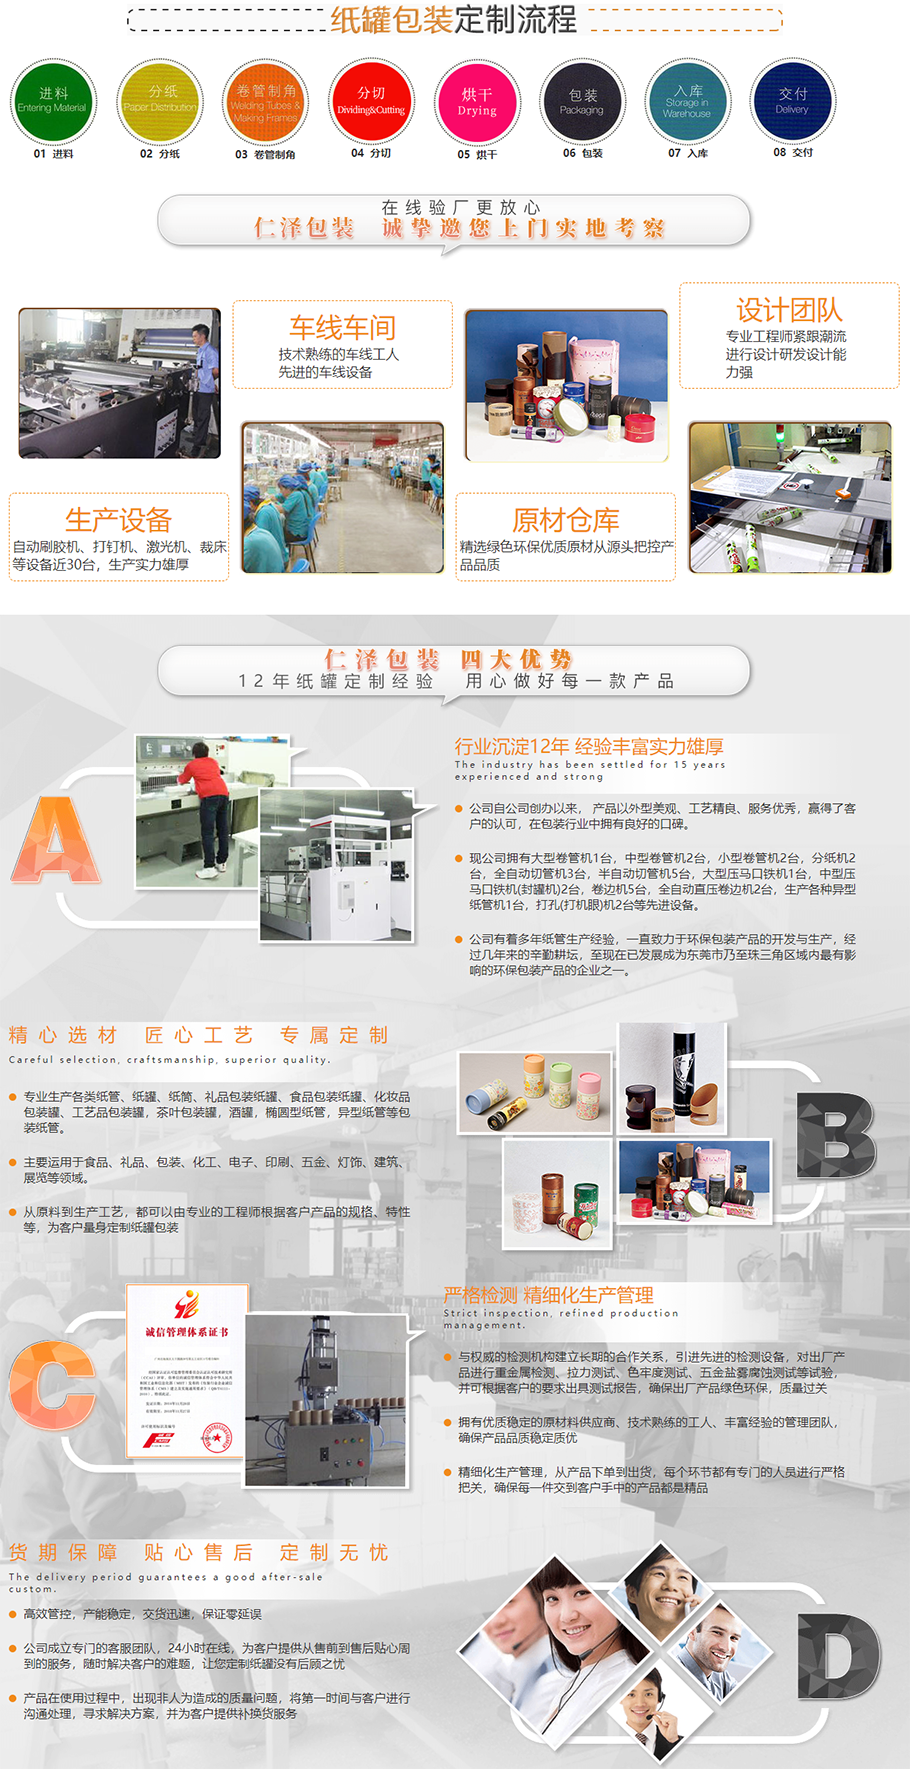 东莞市仁泽包装制品有限公司 - Dongguan BEST Packging Products Co.png